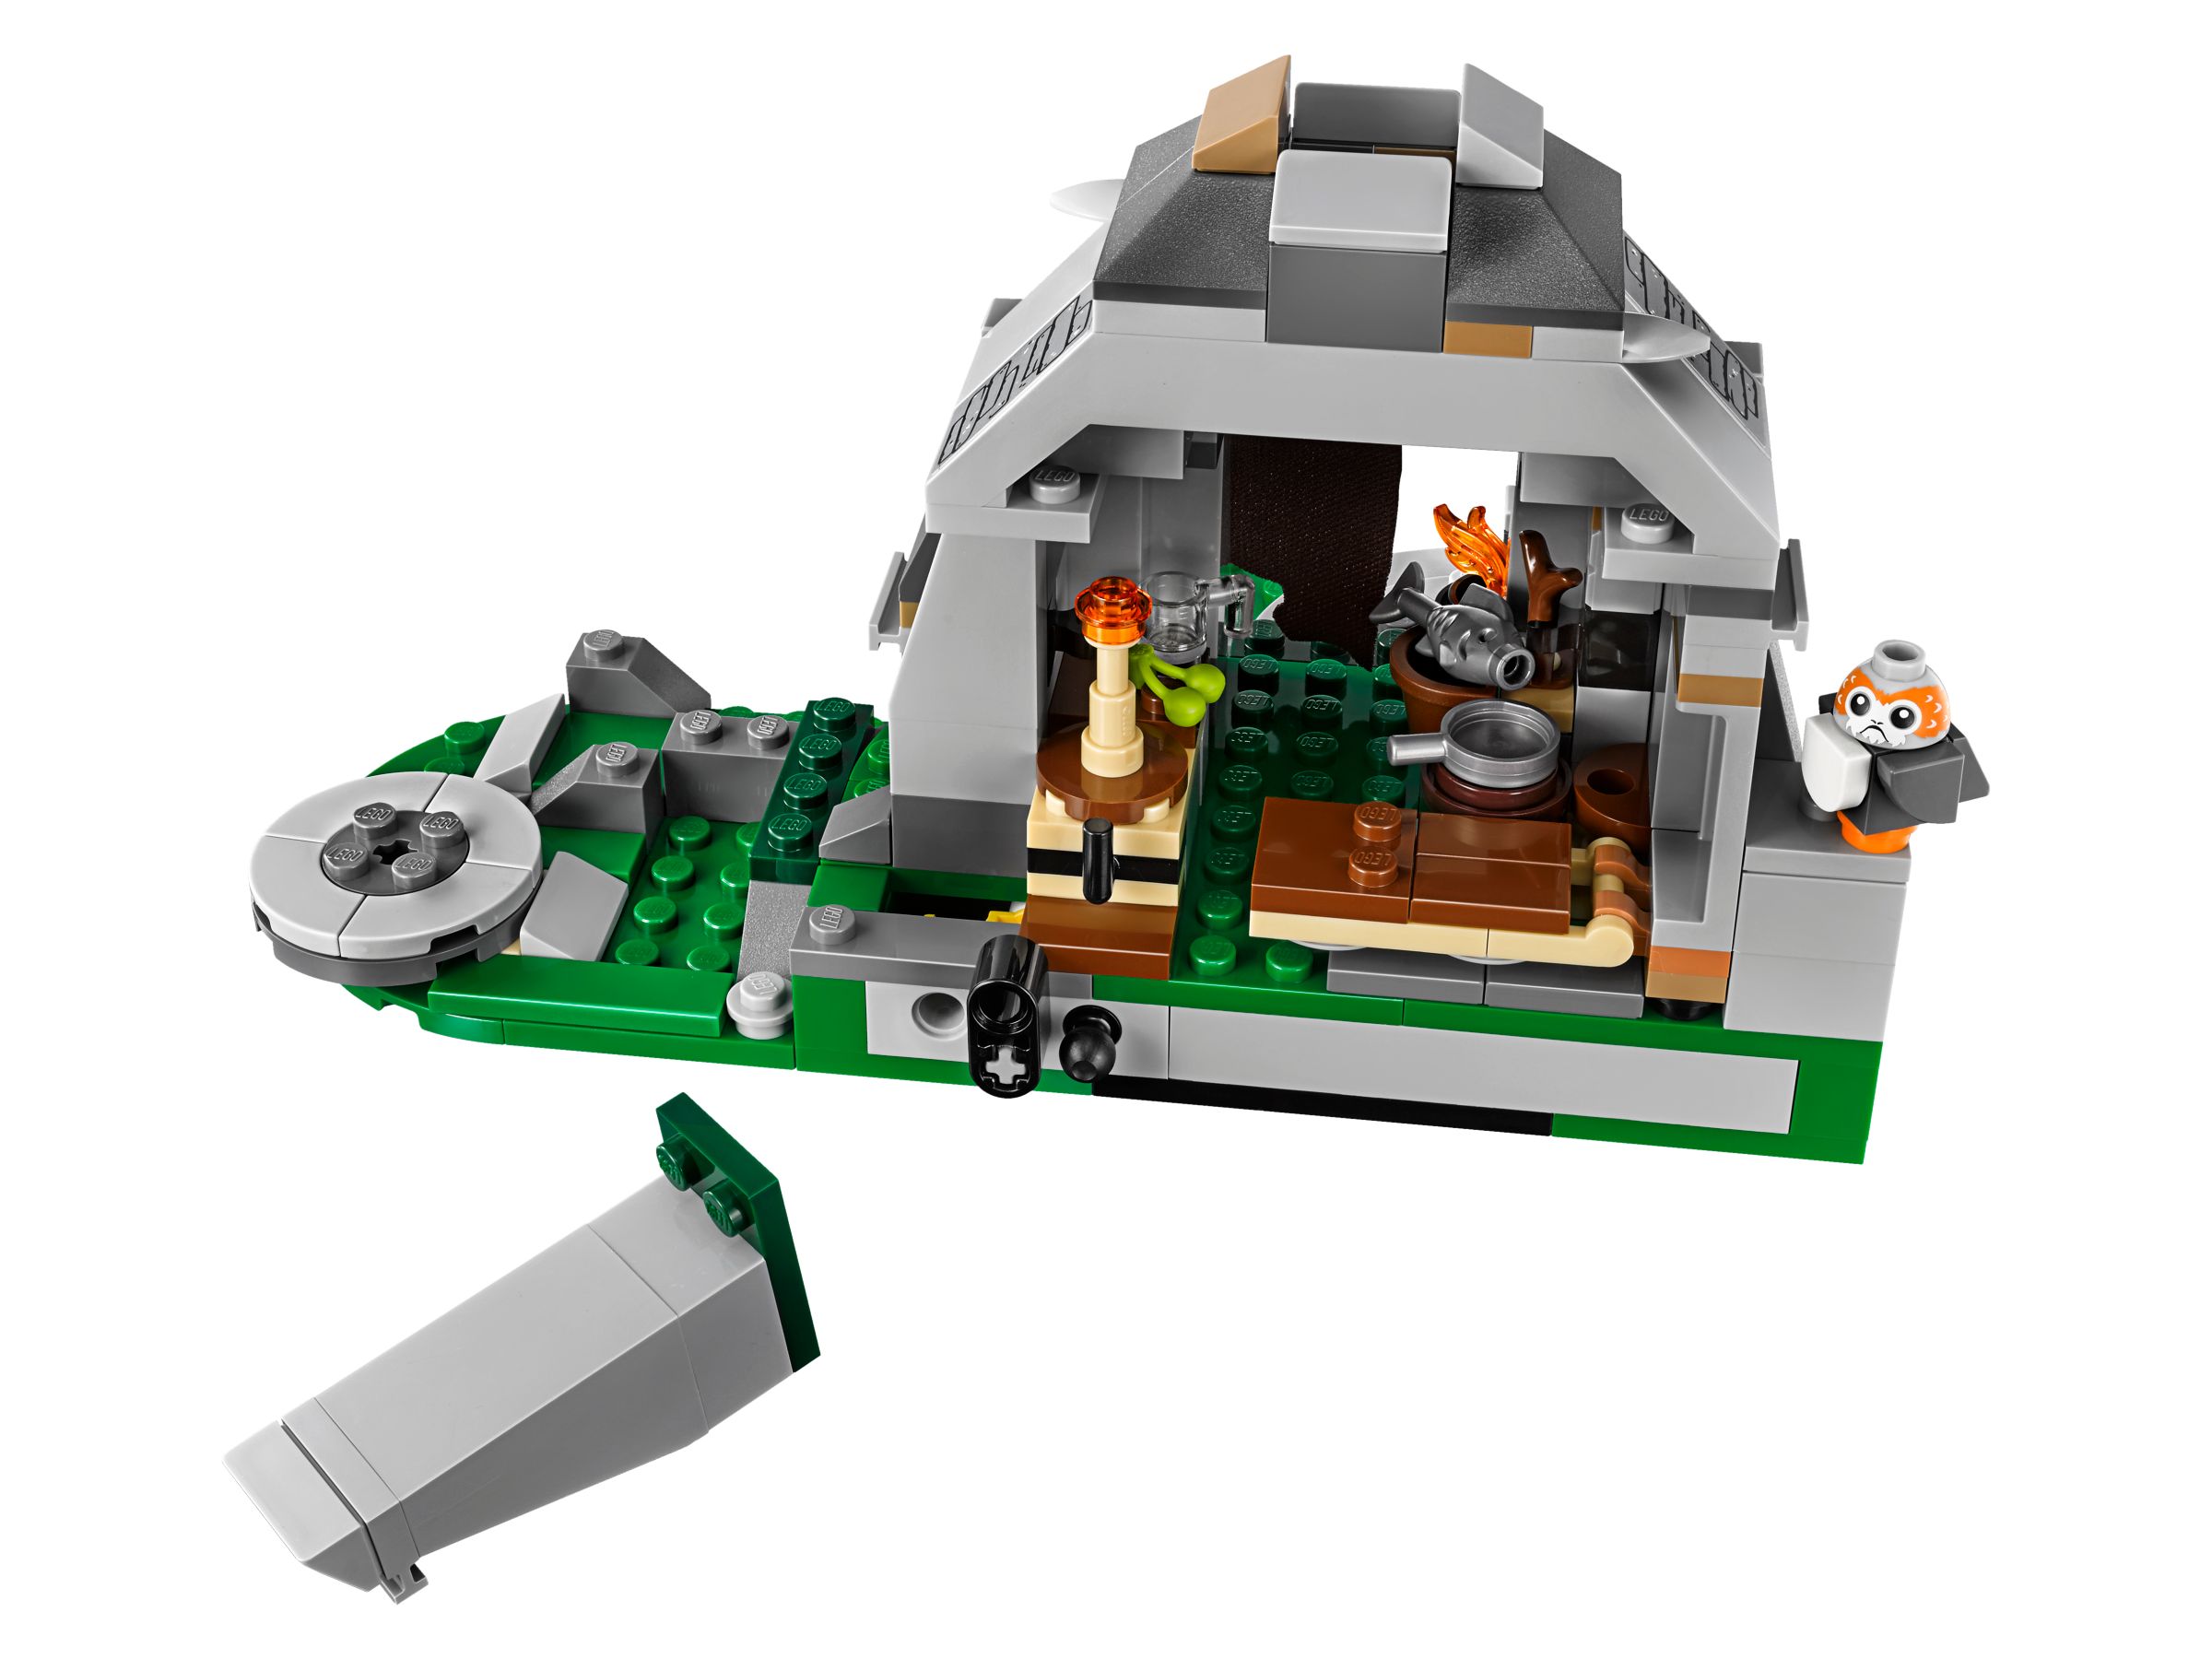 LEGO Star Wars 75200 Ahch-To Island™ Training LEGO_75200_alt4.jpg